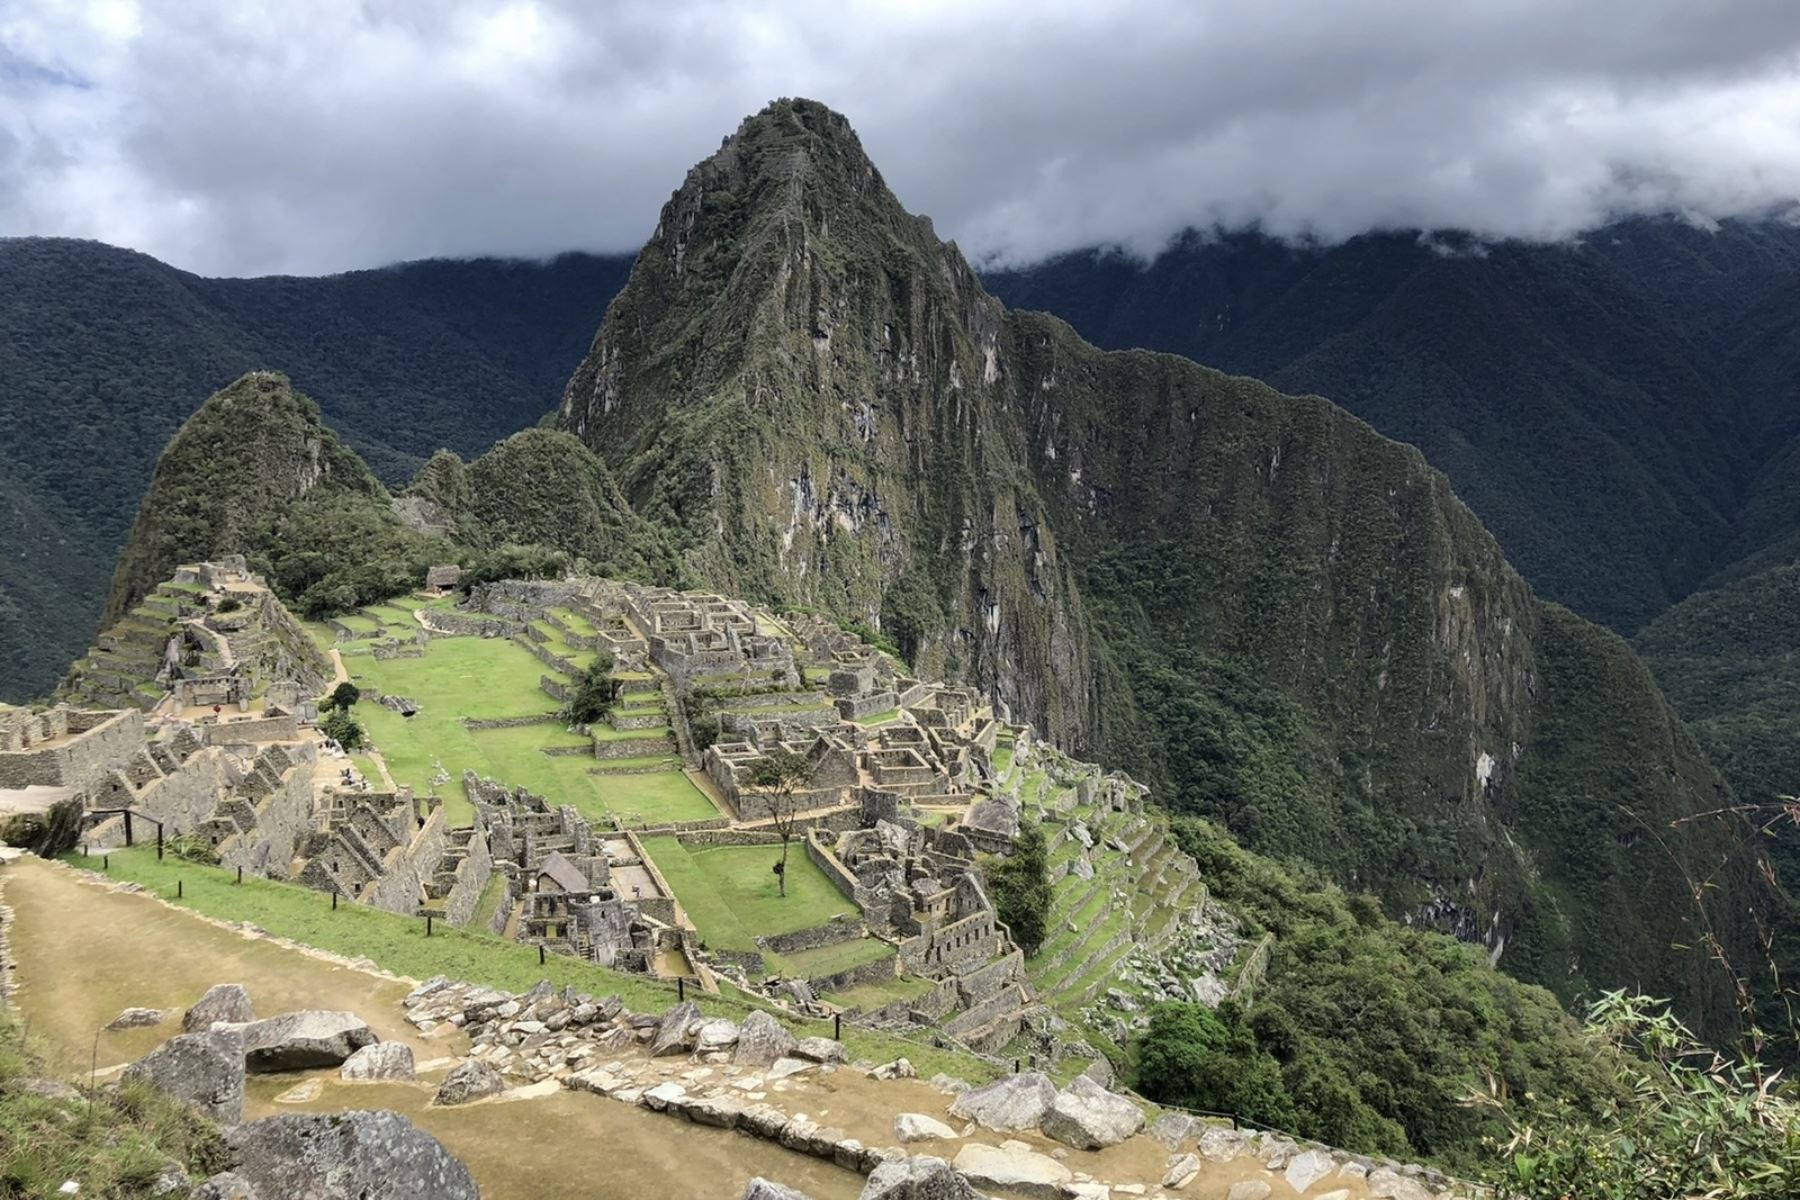 El irresistible interés que genera Machu Picchu en los viajeros de todo el mundo, quienes añoran visitar y recorrer las instalaciones de la formidable ciudadela inca, responde a aspectos históricos, culturales, arqueológicos, arquitectónicos, geográficos, geológicos, entre otros de gran valor universal que le han valido el reconocimiento como Patrimonio de la Humanidad y maravilla del orbe. ANDINA/Difusión